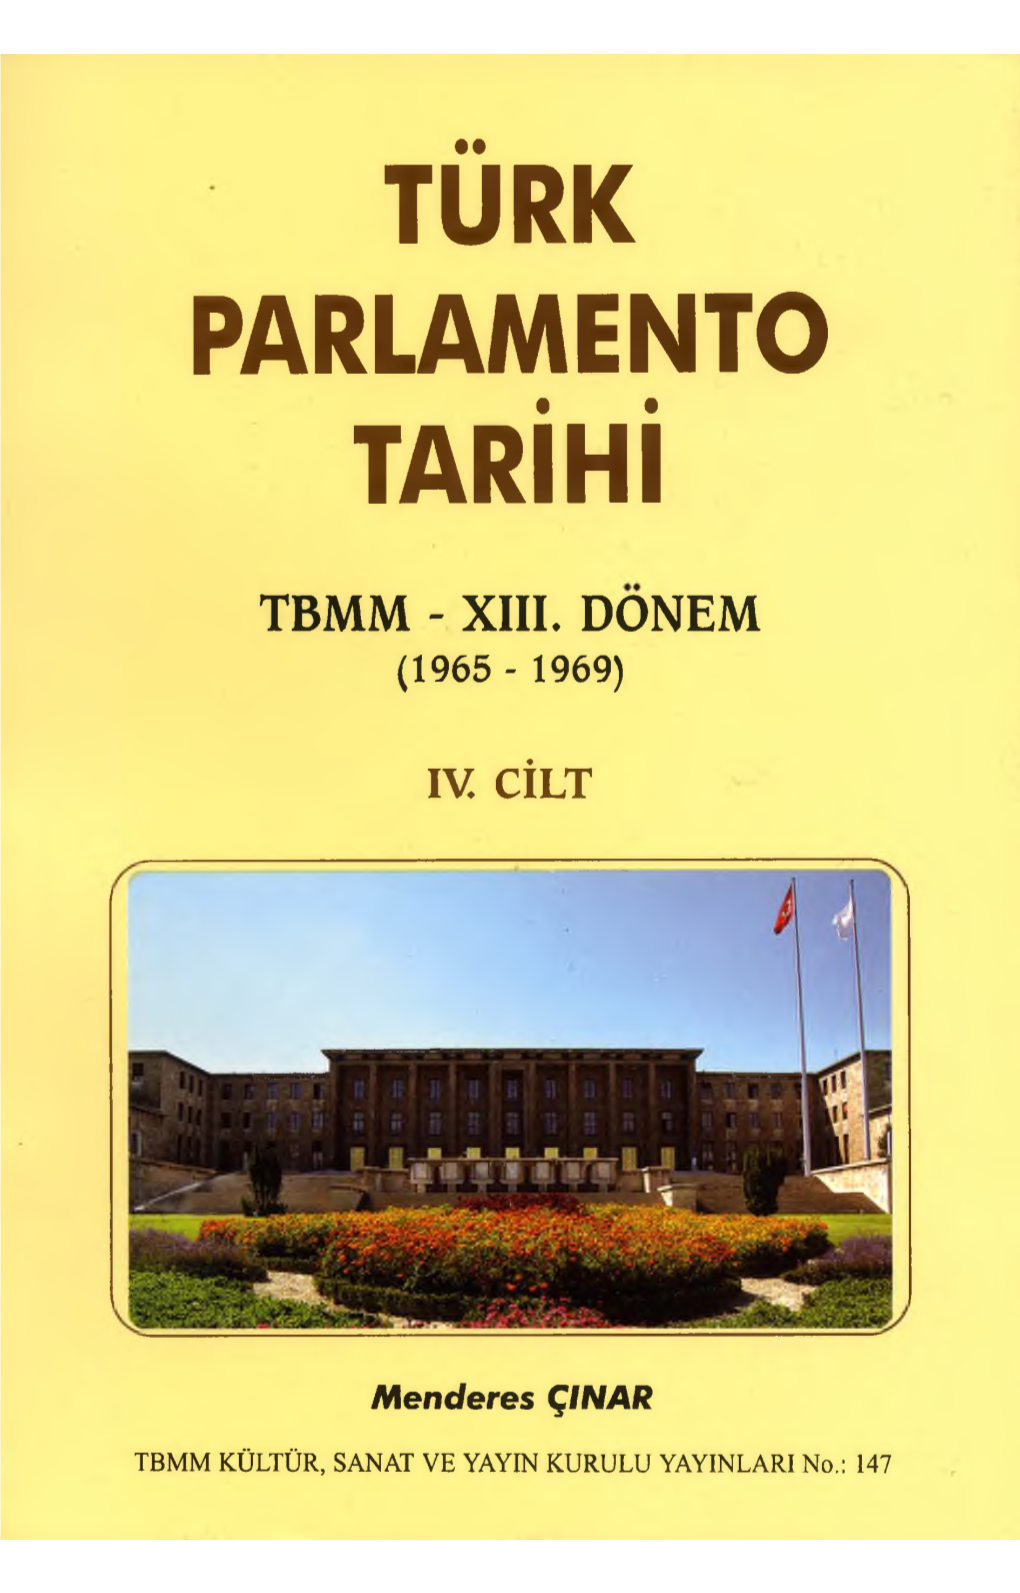 Turk Parlamento Tarihi